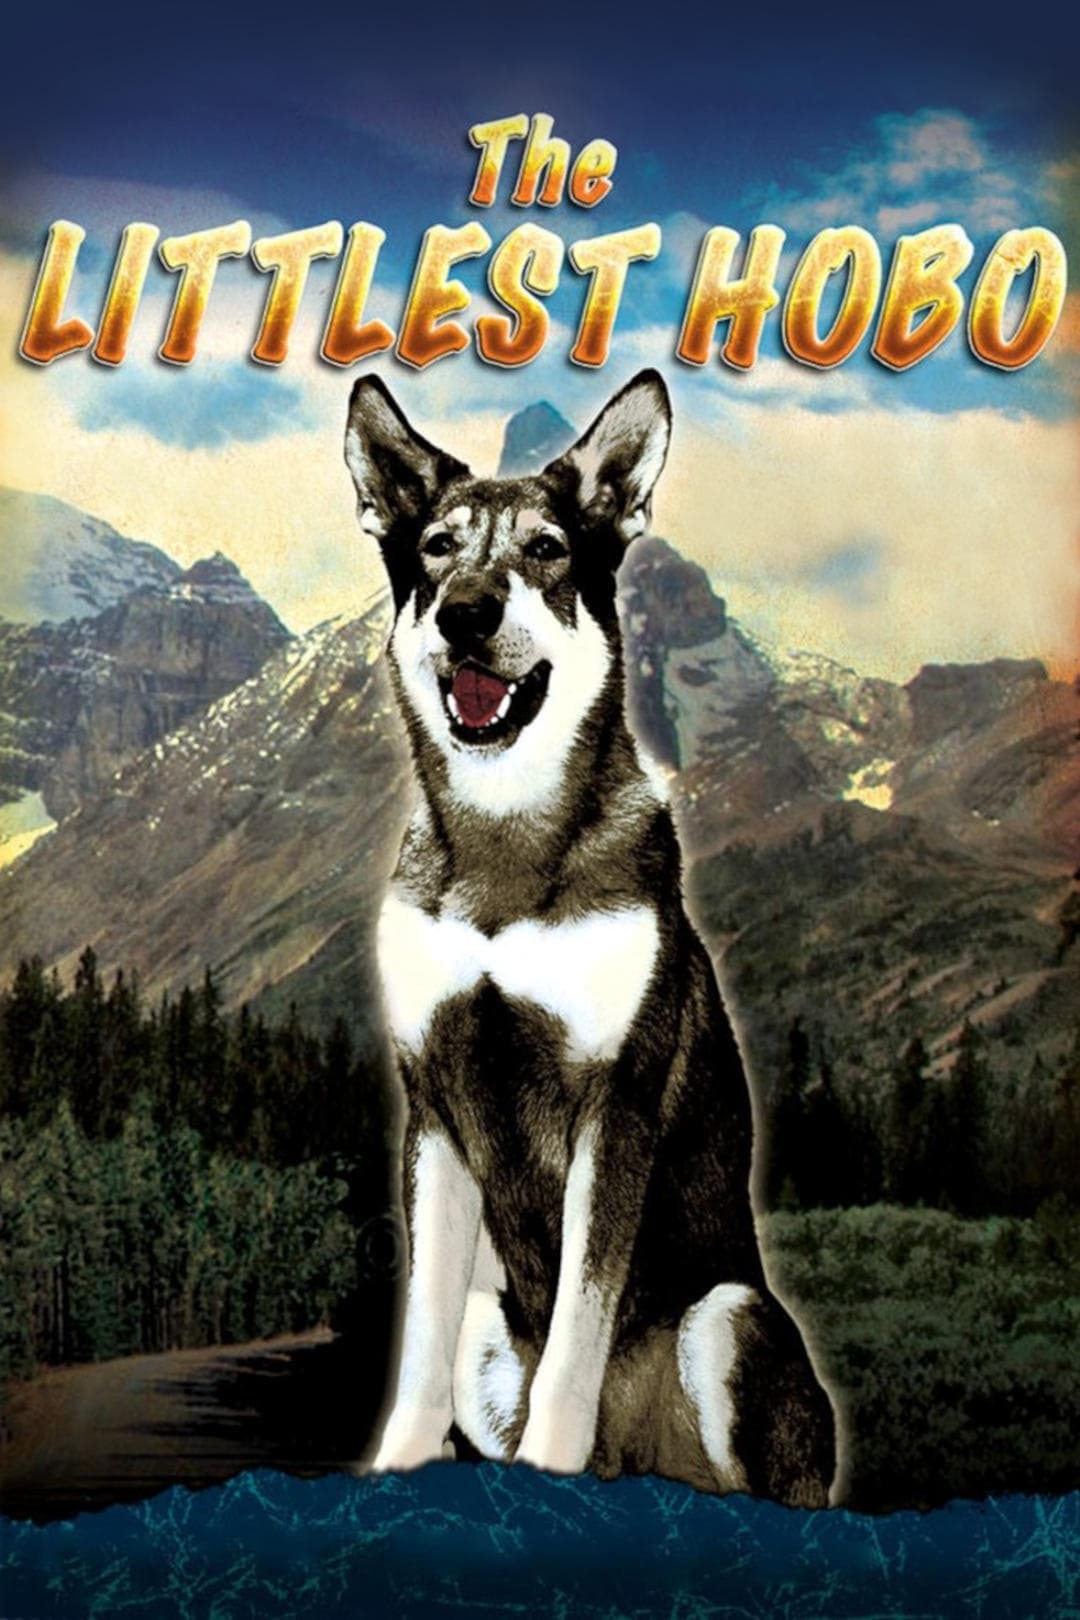 The Littlest Hobo (1979)